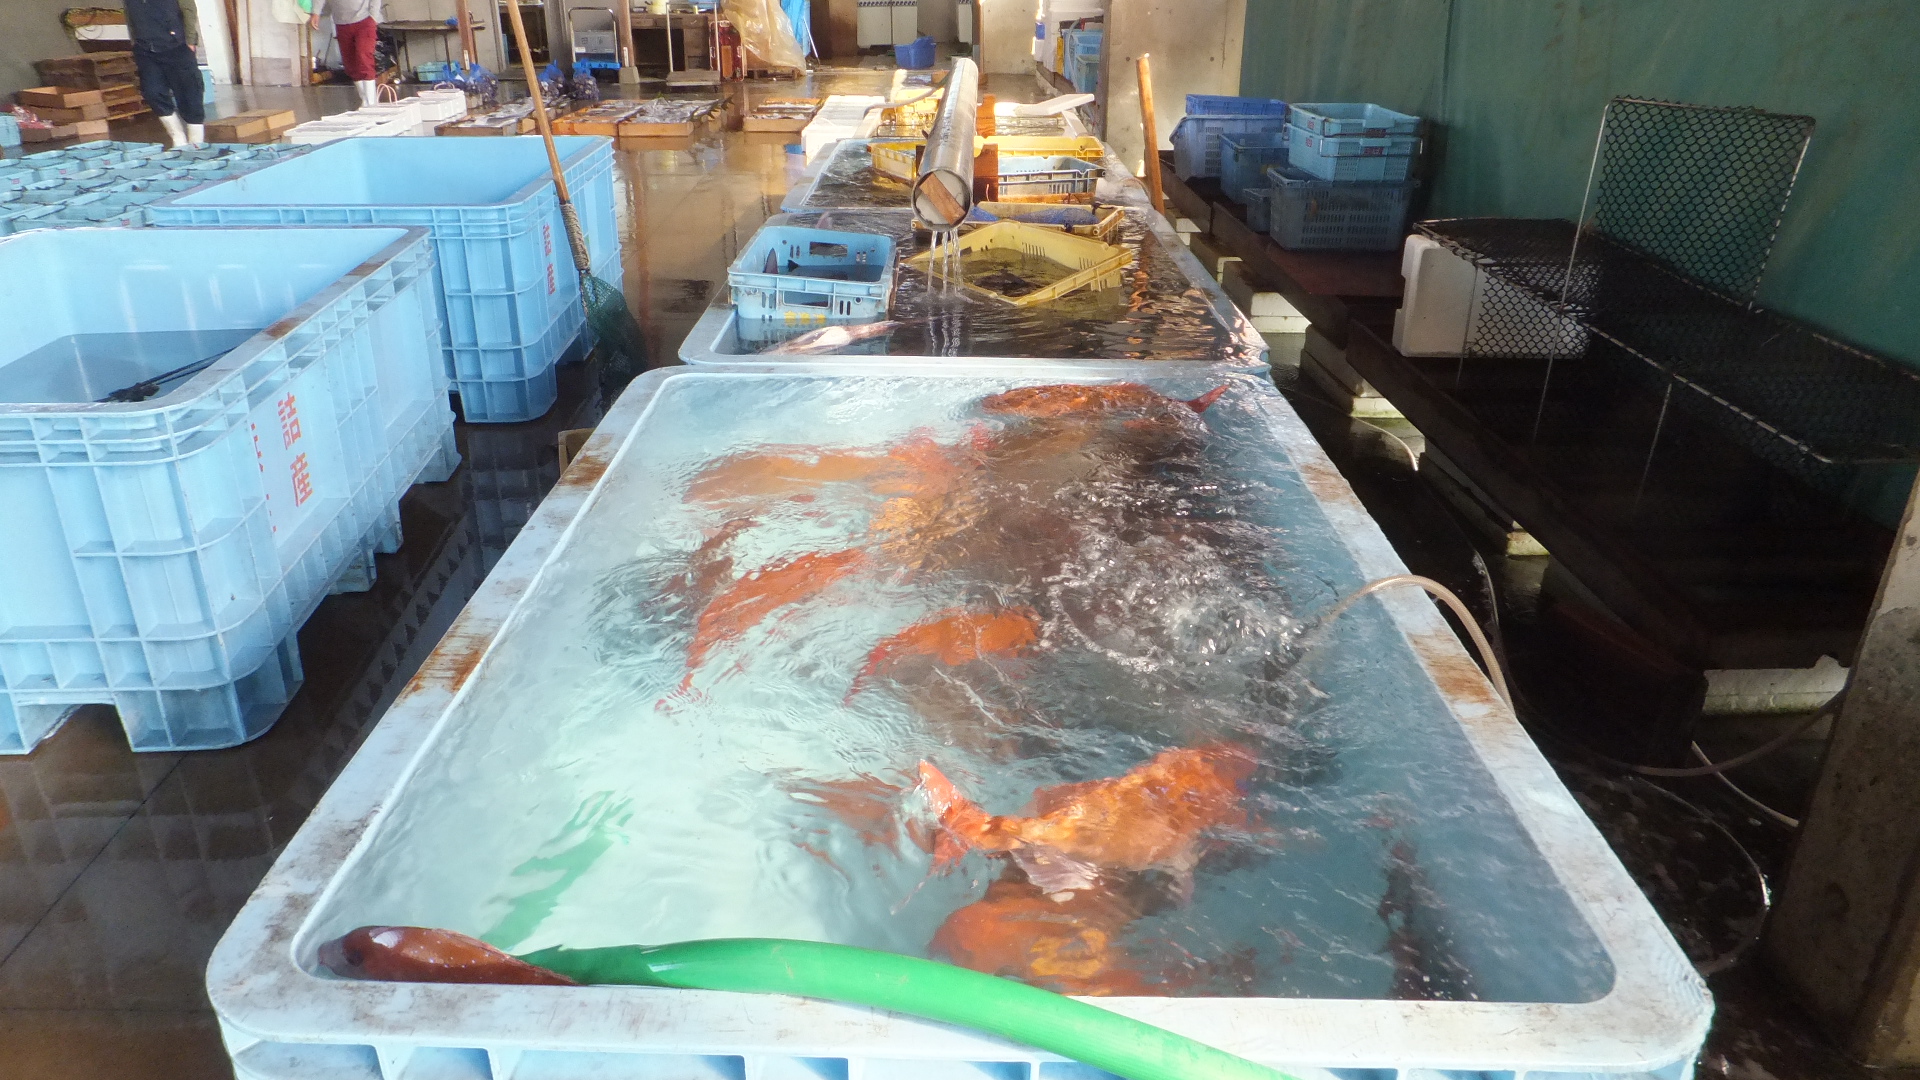 本日の漁獲情報 4 19 またもや 鯛祭り うおけんブログ 京都丹後の漁港から全国の厨房へ 創業50年の目利きがお届けする魚と蟹